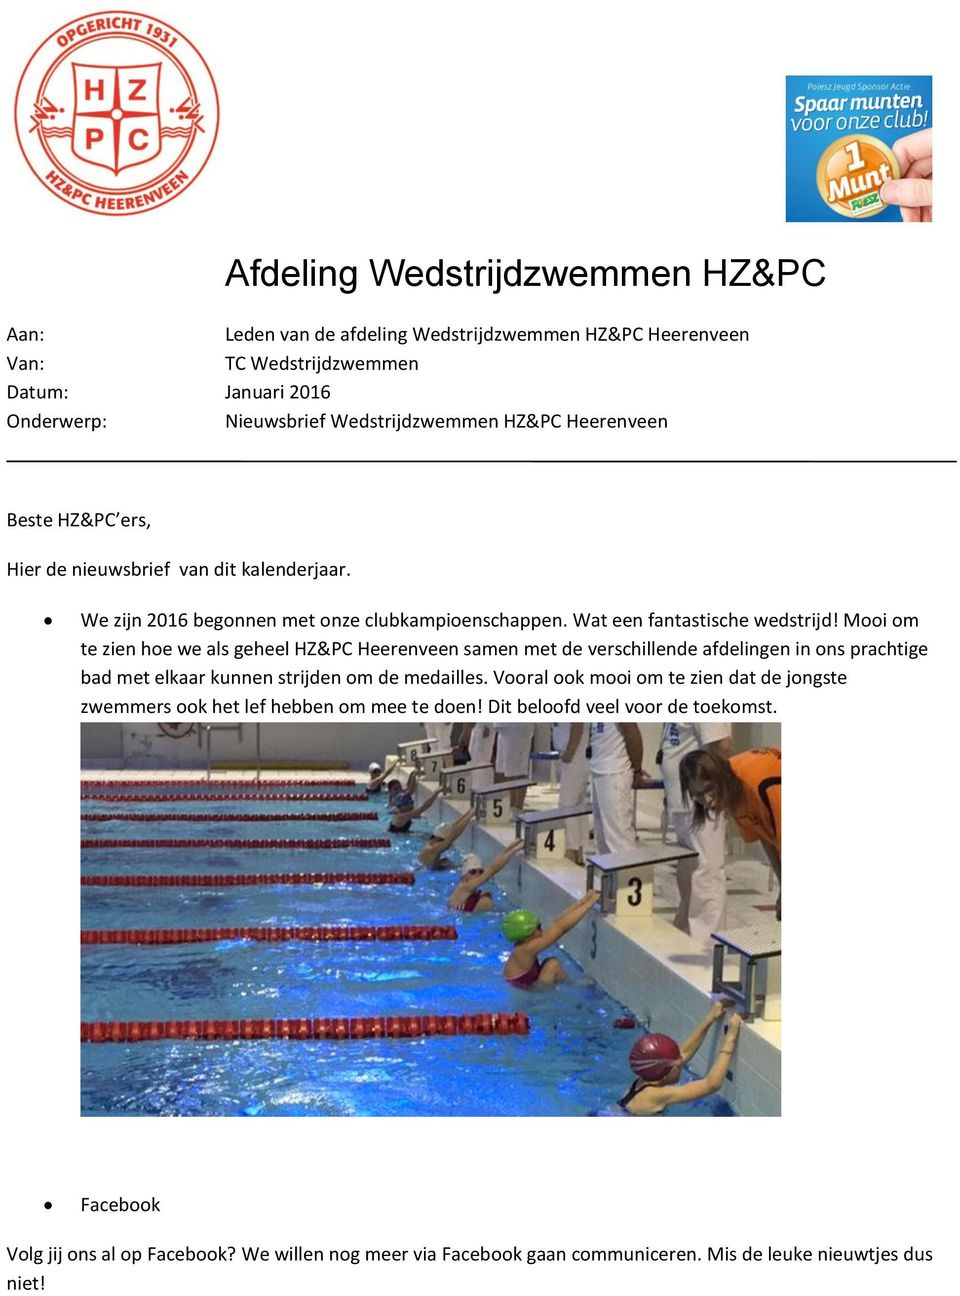 Mooi om te zien hoe we als geheel HZ&PC Heerenveen samen met de verschillende afdelingen in ons prachtige bad met elkaar kunnen strijden om de medailles.